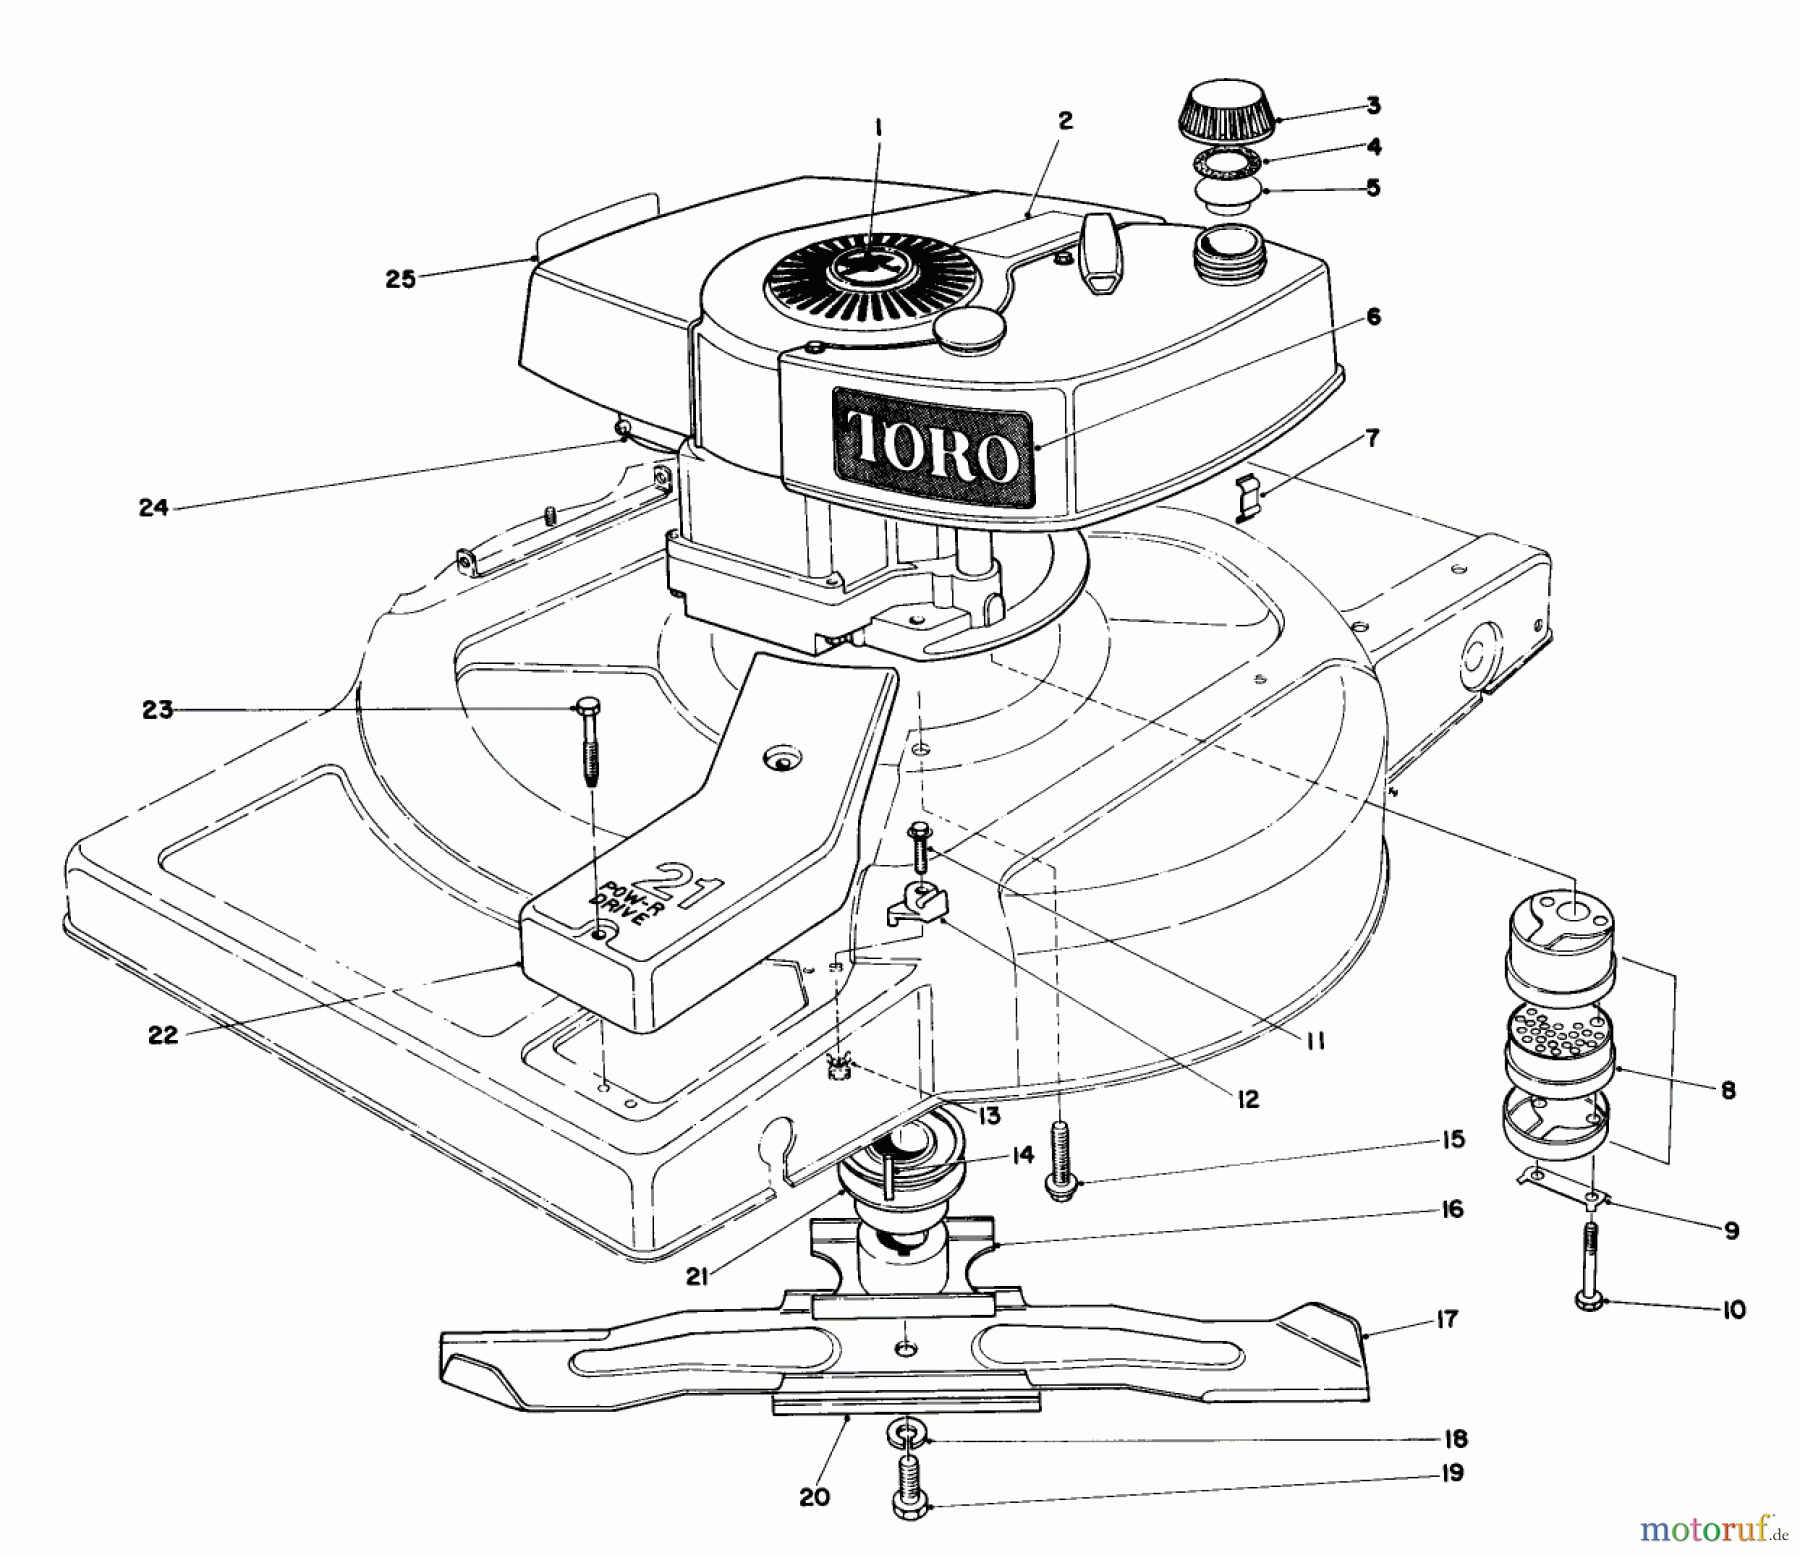  Toro Neu Mowers, Walk-Behind Seite 1 18010 - Toro Lawnmower, 1982 (2000001-2999999) ENGINE ASSEMBLY MODEL 18010